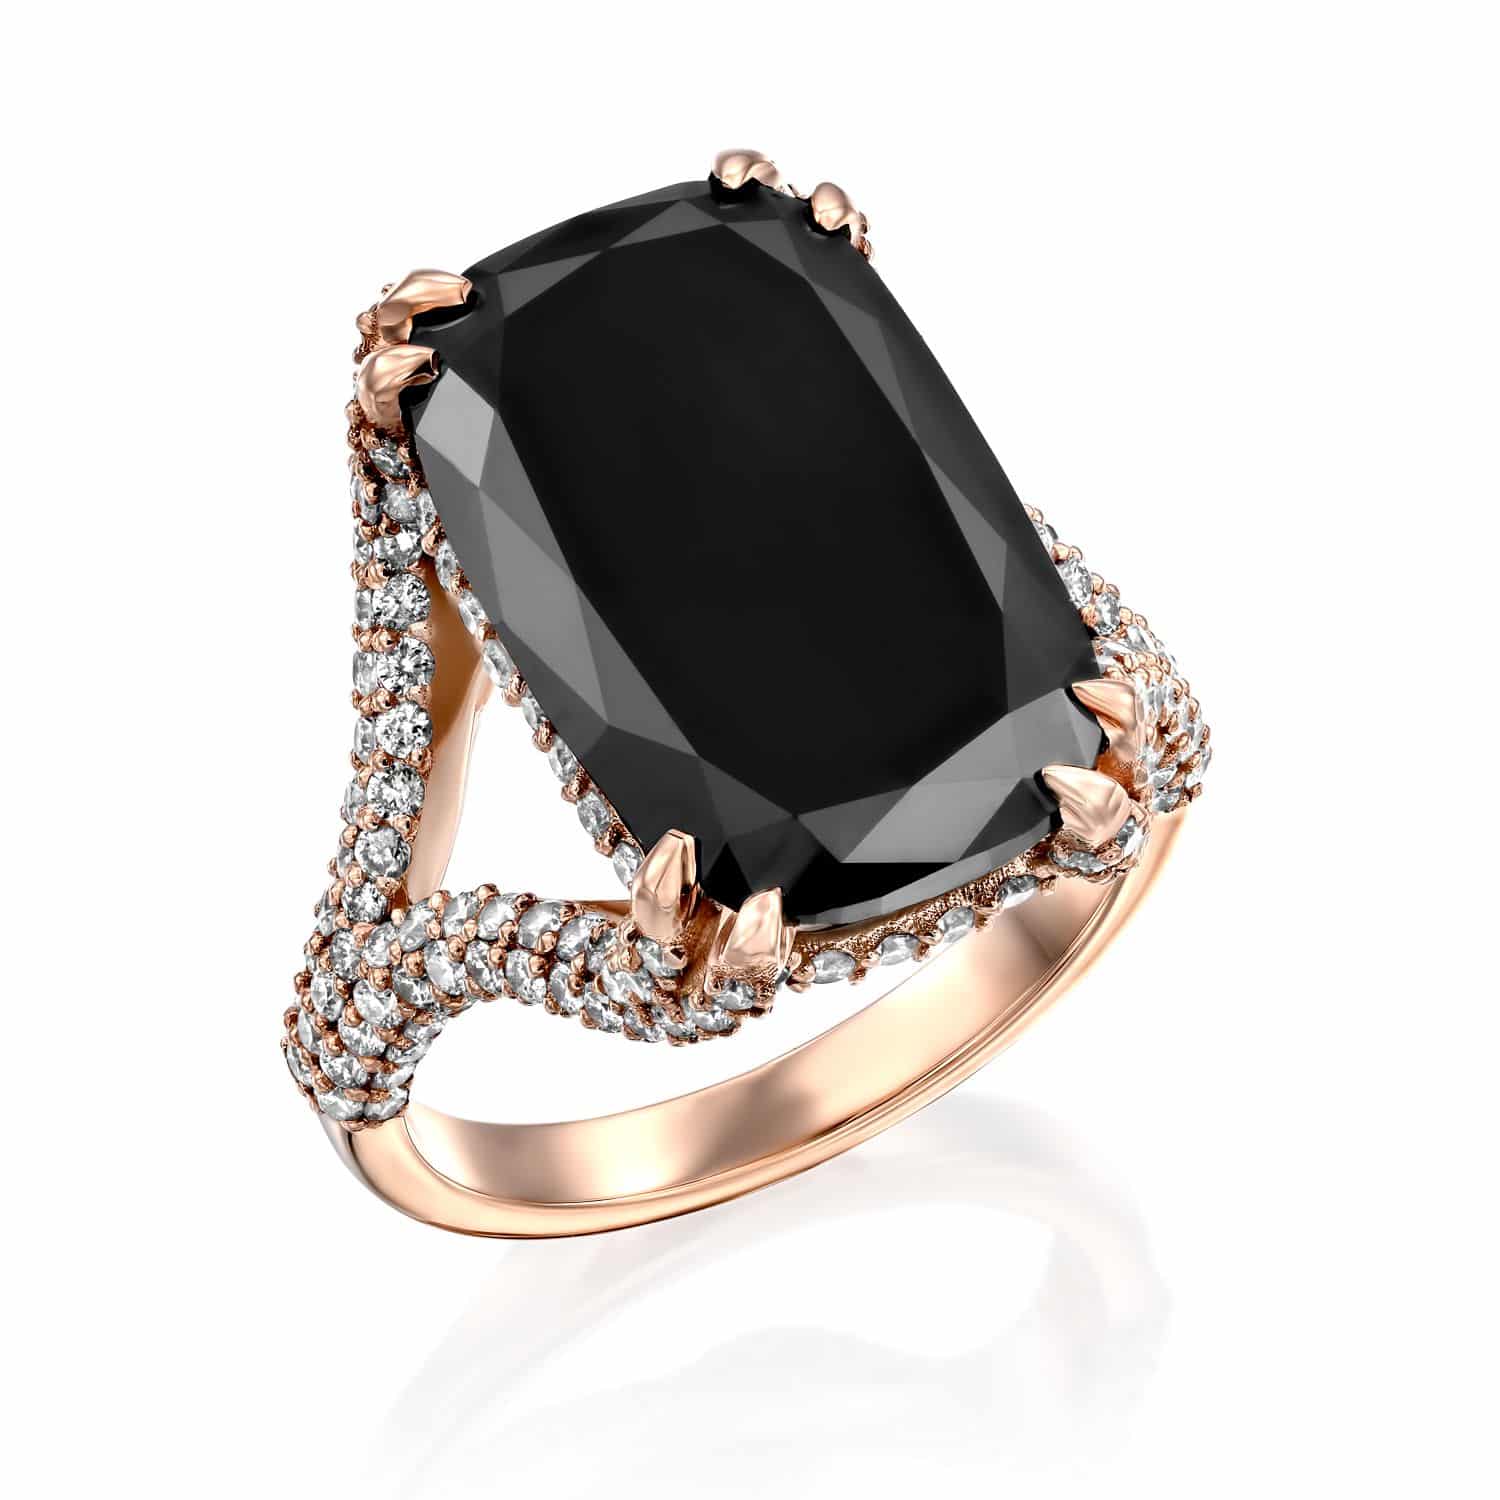 דגם טבעת יהלומים אלגנטי מישל הכוללת אבן חן שחורה גדולה ומלבנית מוקפת הילה כפולה של יהלומים נוצצים משובצים בעיצוב טוויסט.